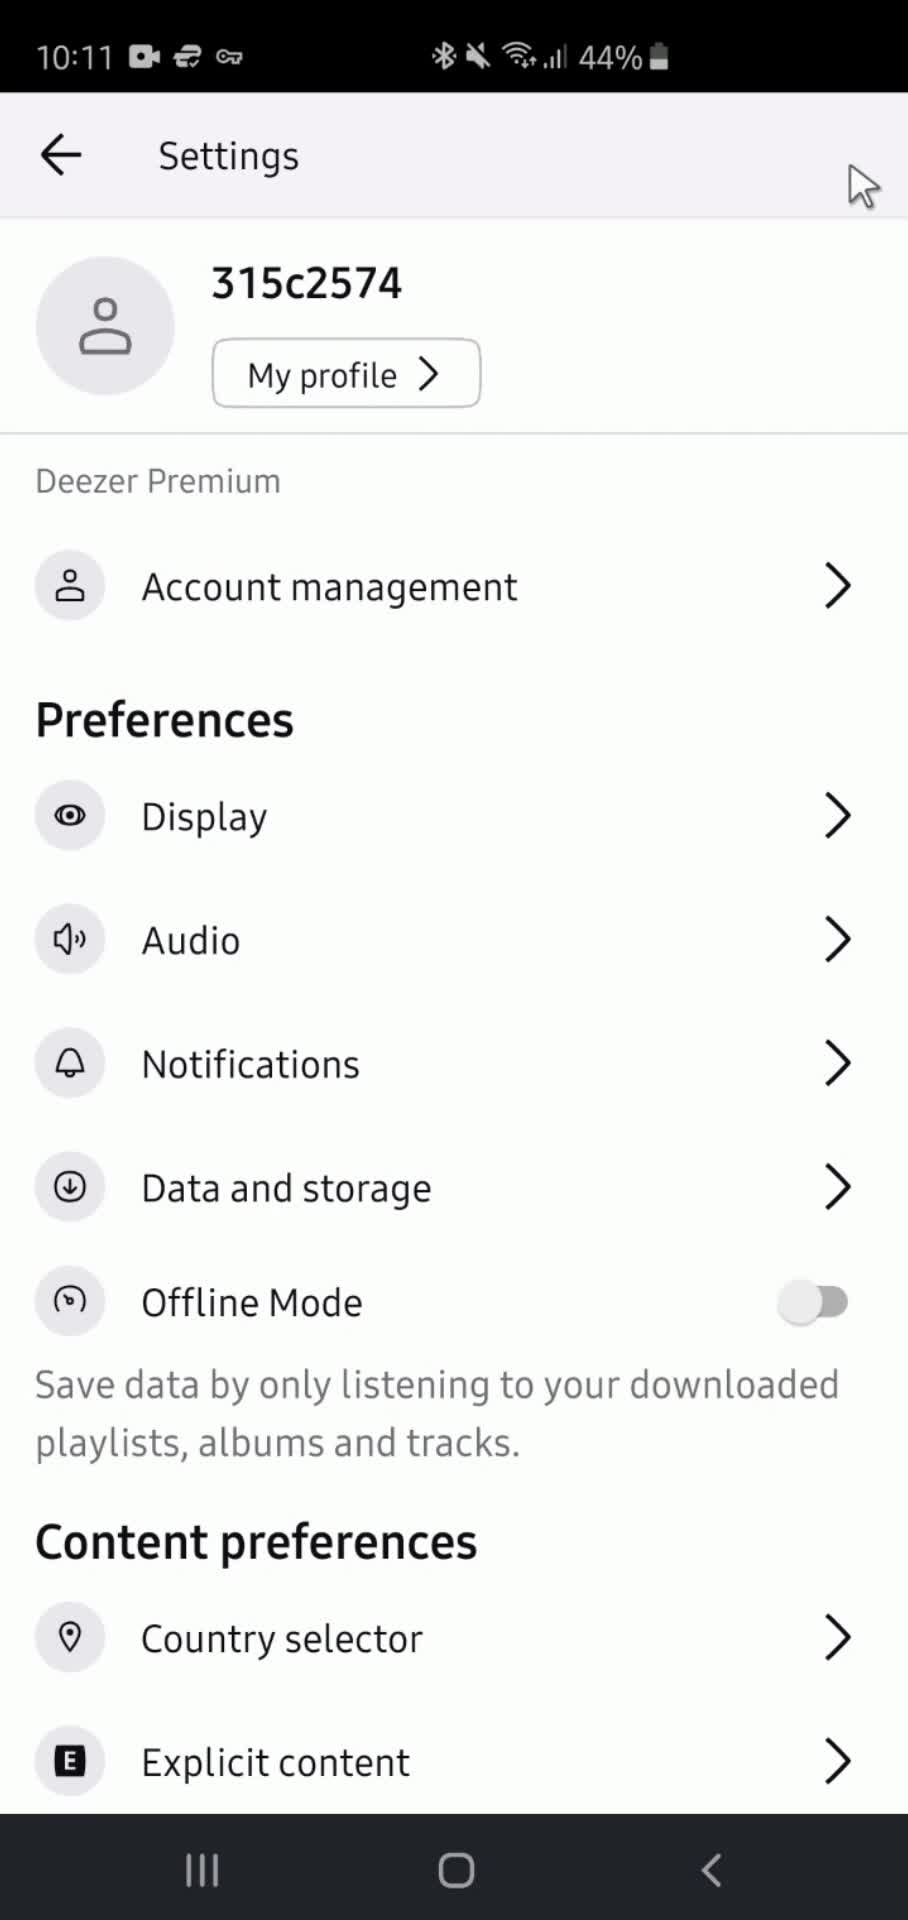 Deezer settings menu screenshot